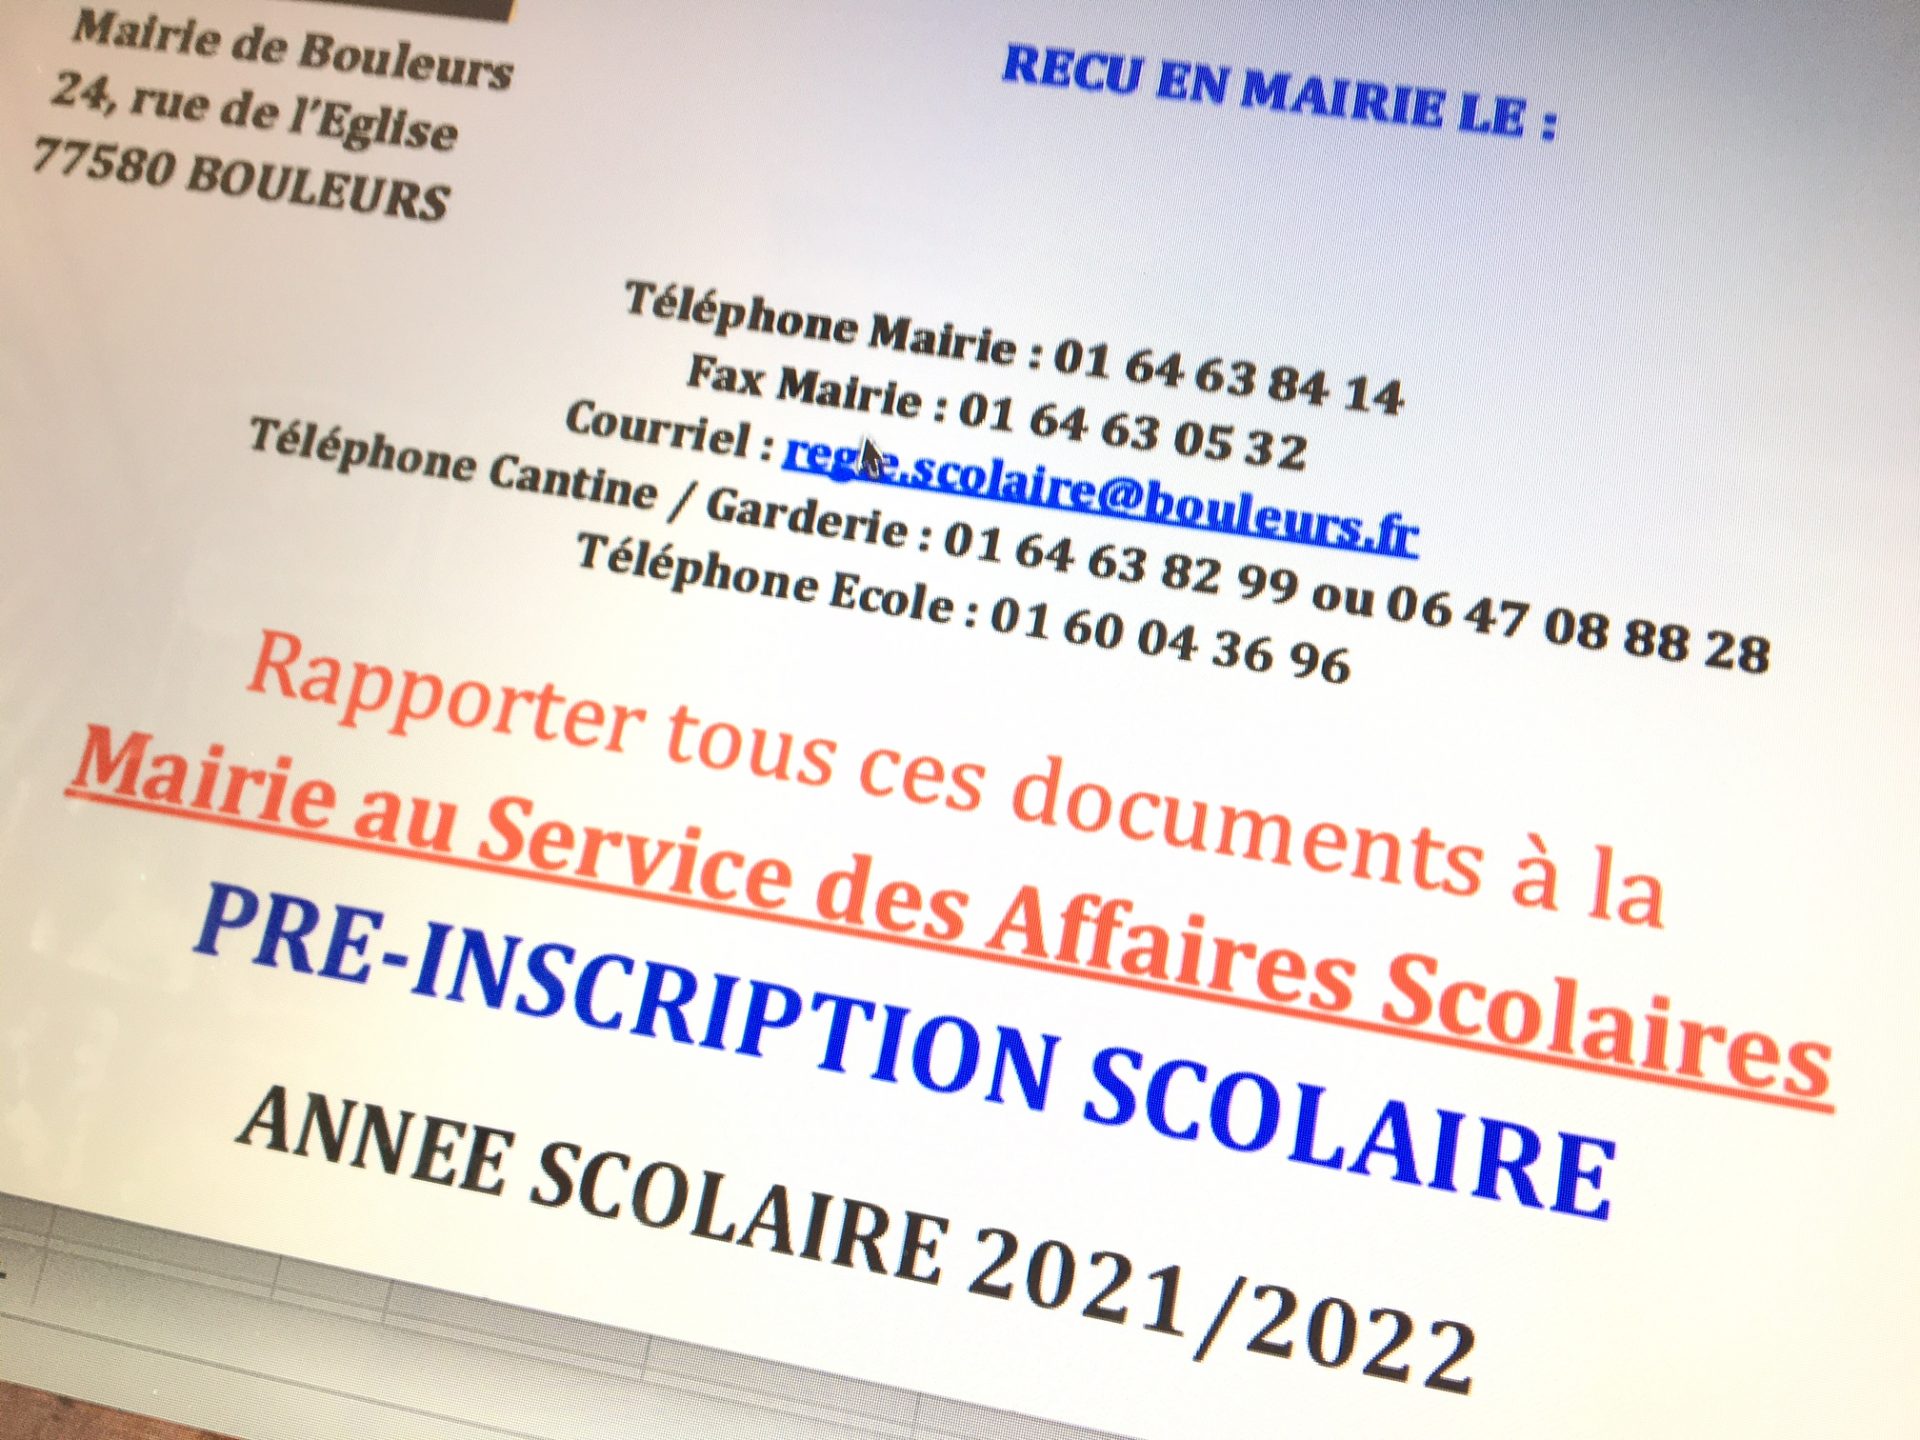 OUVERTURE INSCRIPTION RENTREE SCOLAIRE 2021-2022 - Bouleurs